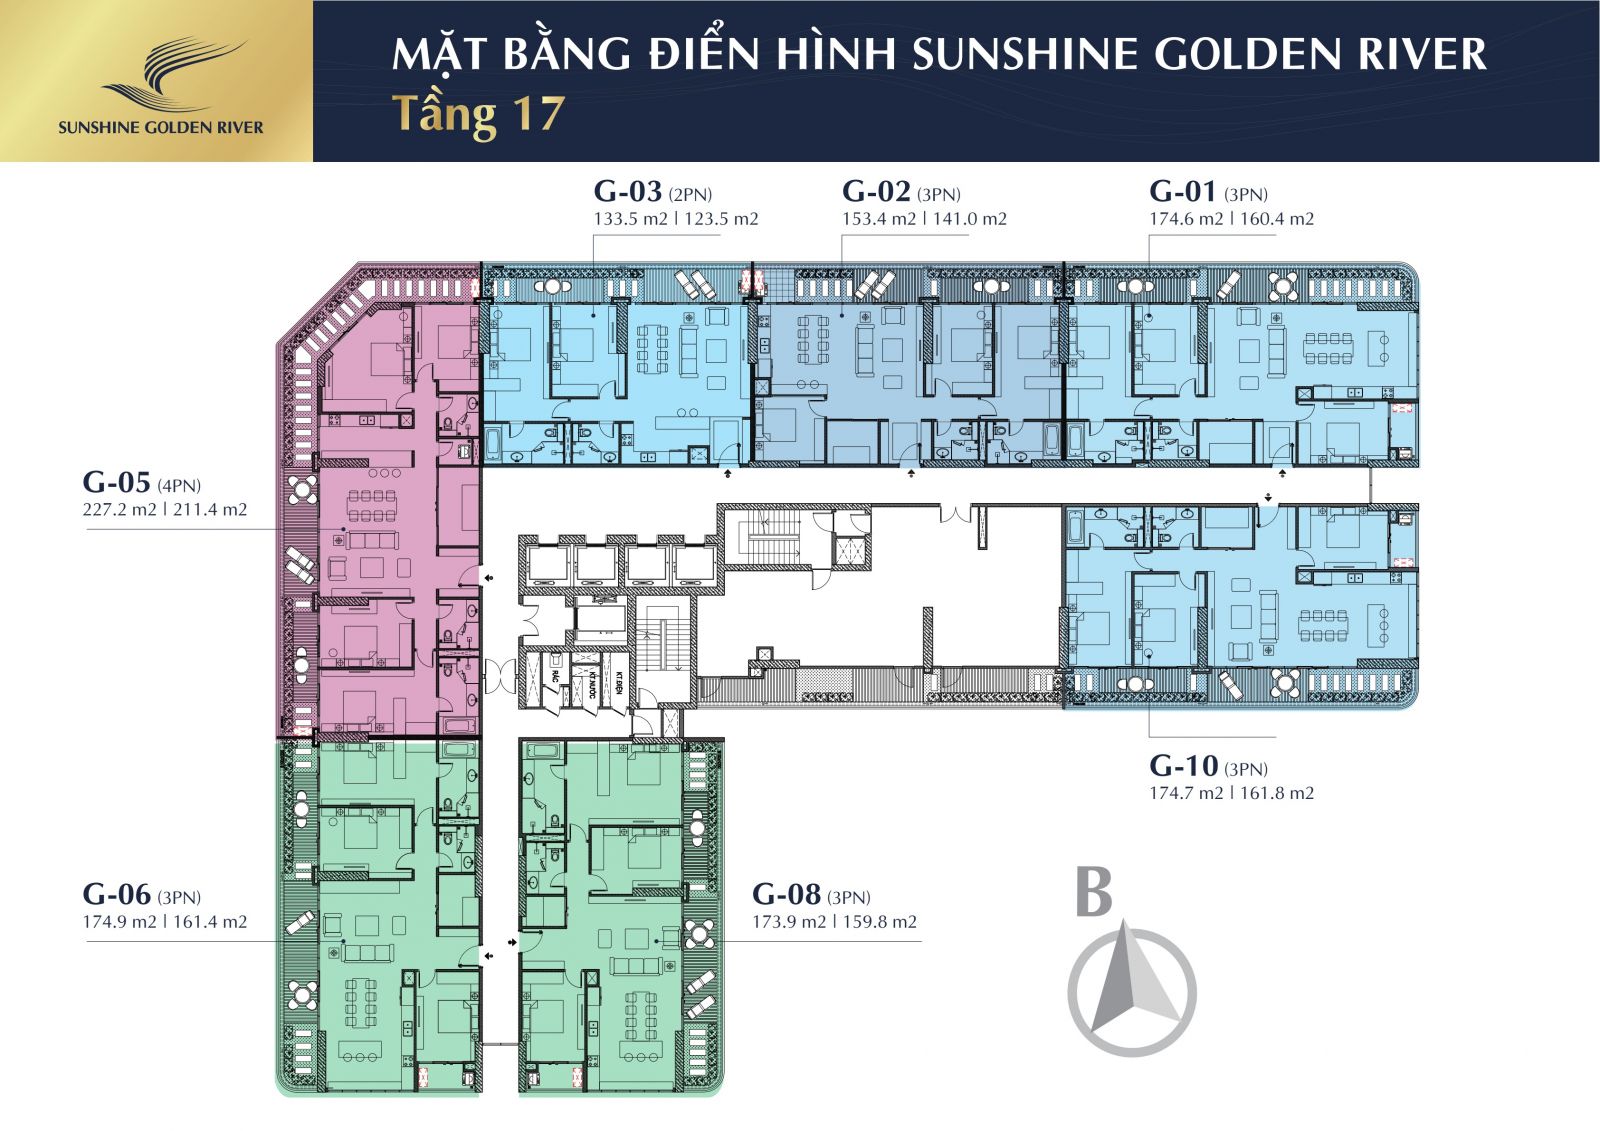 The floor plan of Sunshine Golden River